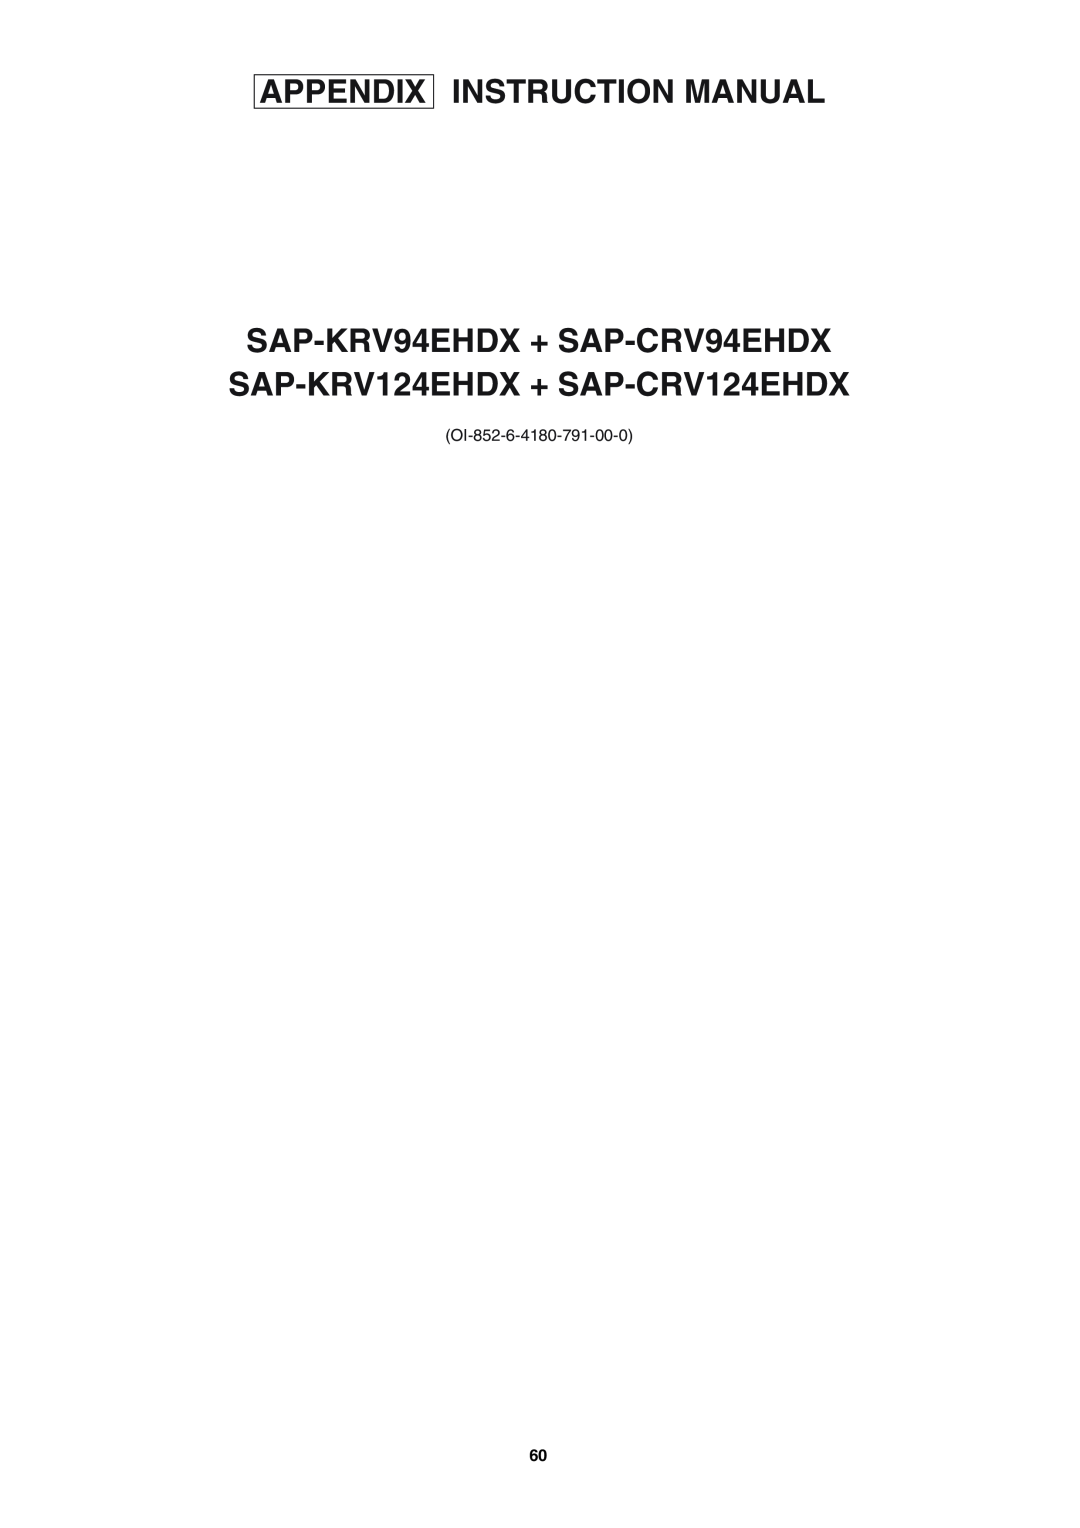 Sanyo SAP-KRV94EHDX service manual OI-852-6-4180-791-00-0 